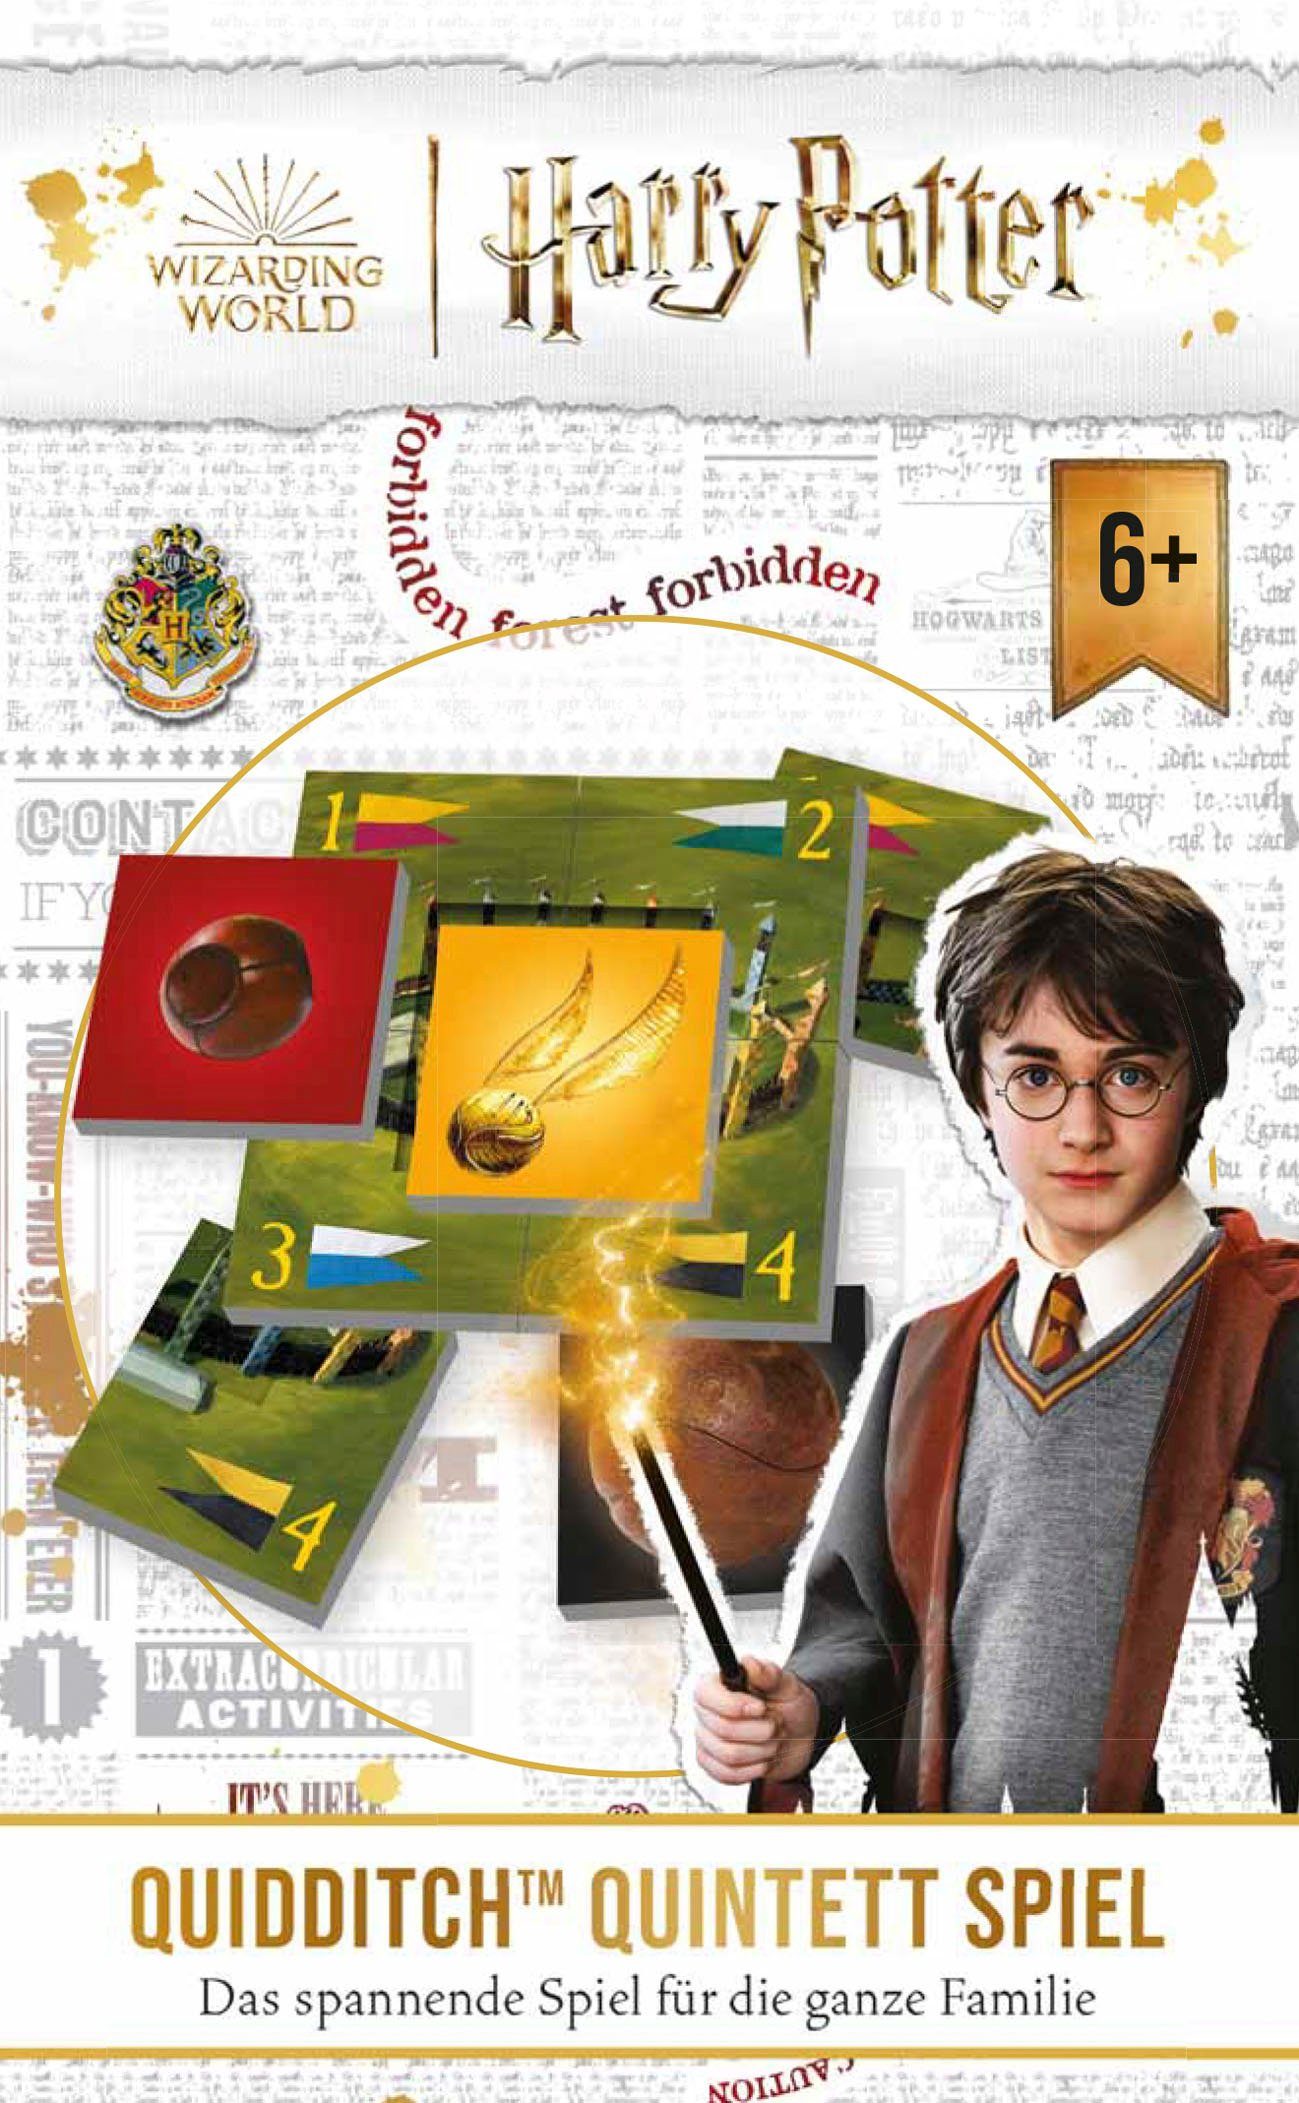 Spiel, Quintett Spiel, Europe Potter - in Harry Made Quidditch Noris